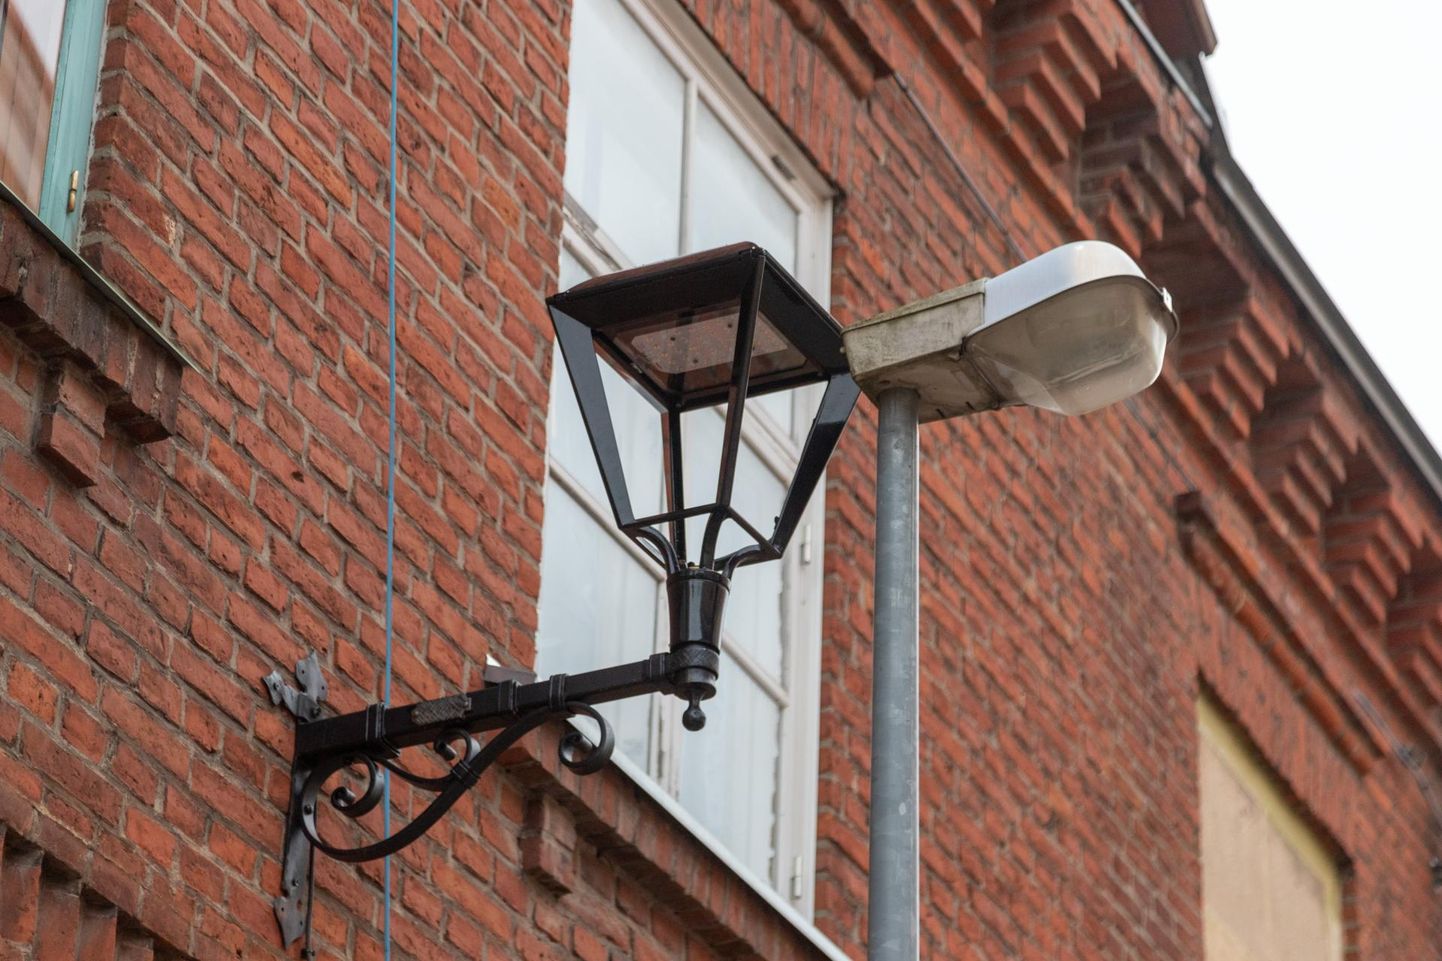 Praegu võib Pikal tänaval näha uut ja endist valgustit, kuid peagi hallid postid koos lambiga kaovad ja jäävad alles mustad laternad.